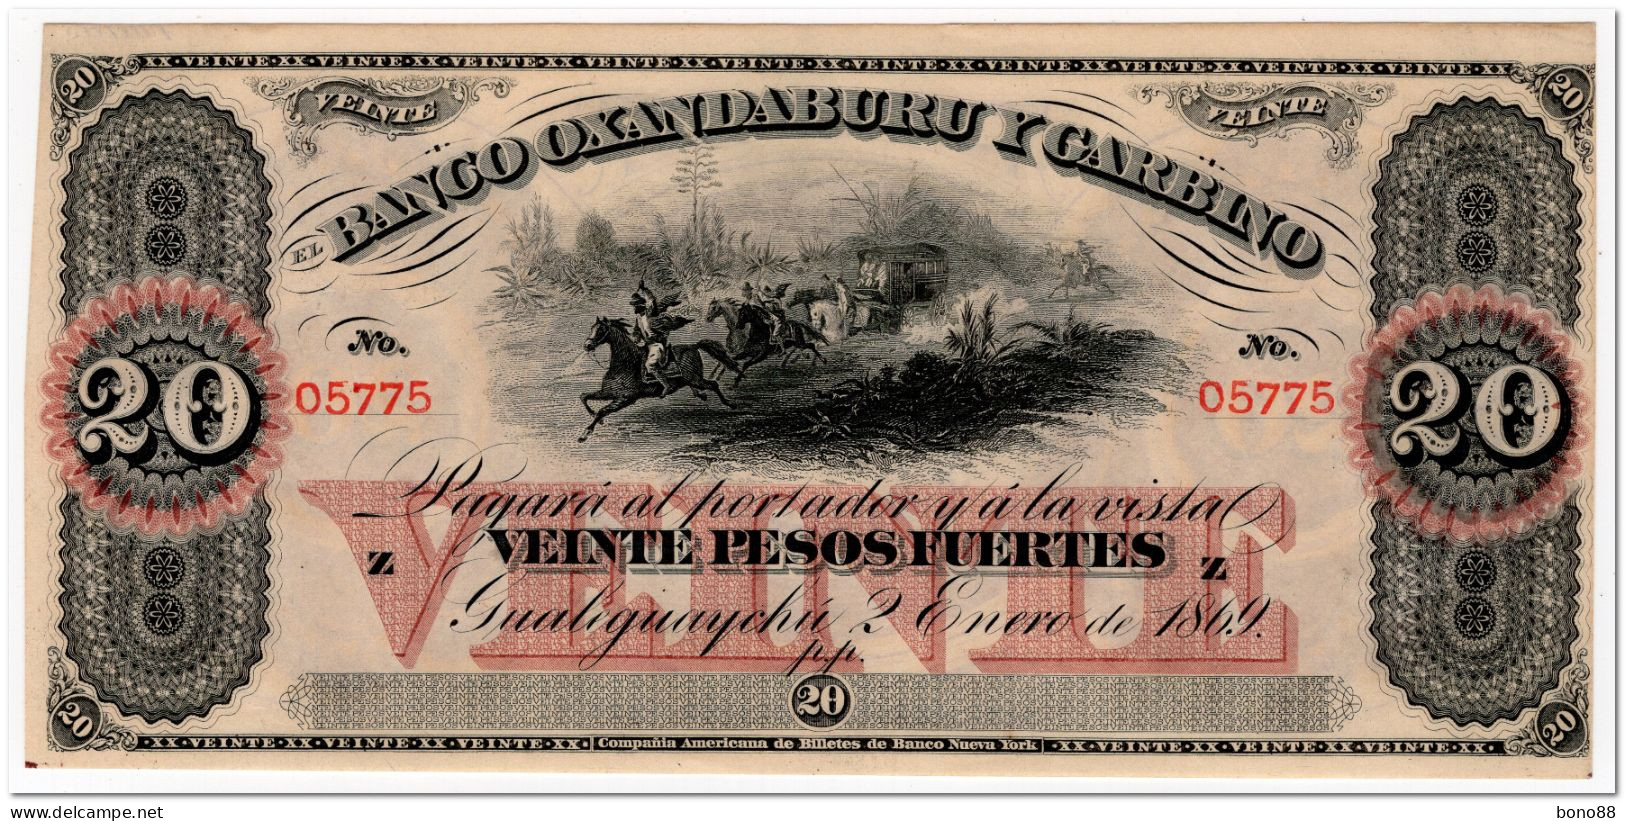 ARGENTINA,BANCO OXANDABURU Y GARBINO,20 PESOS FUERTES,1869,P.S1794,AU-UNC - Argentine